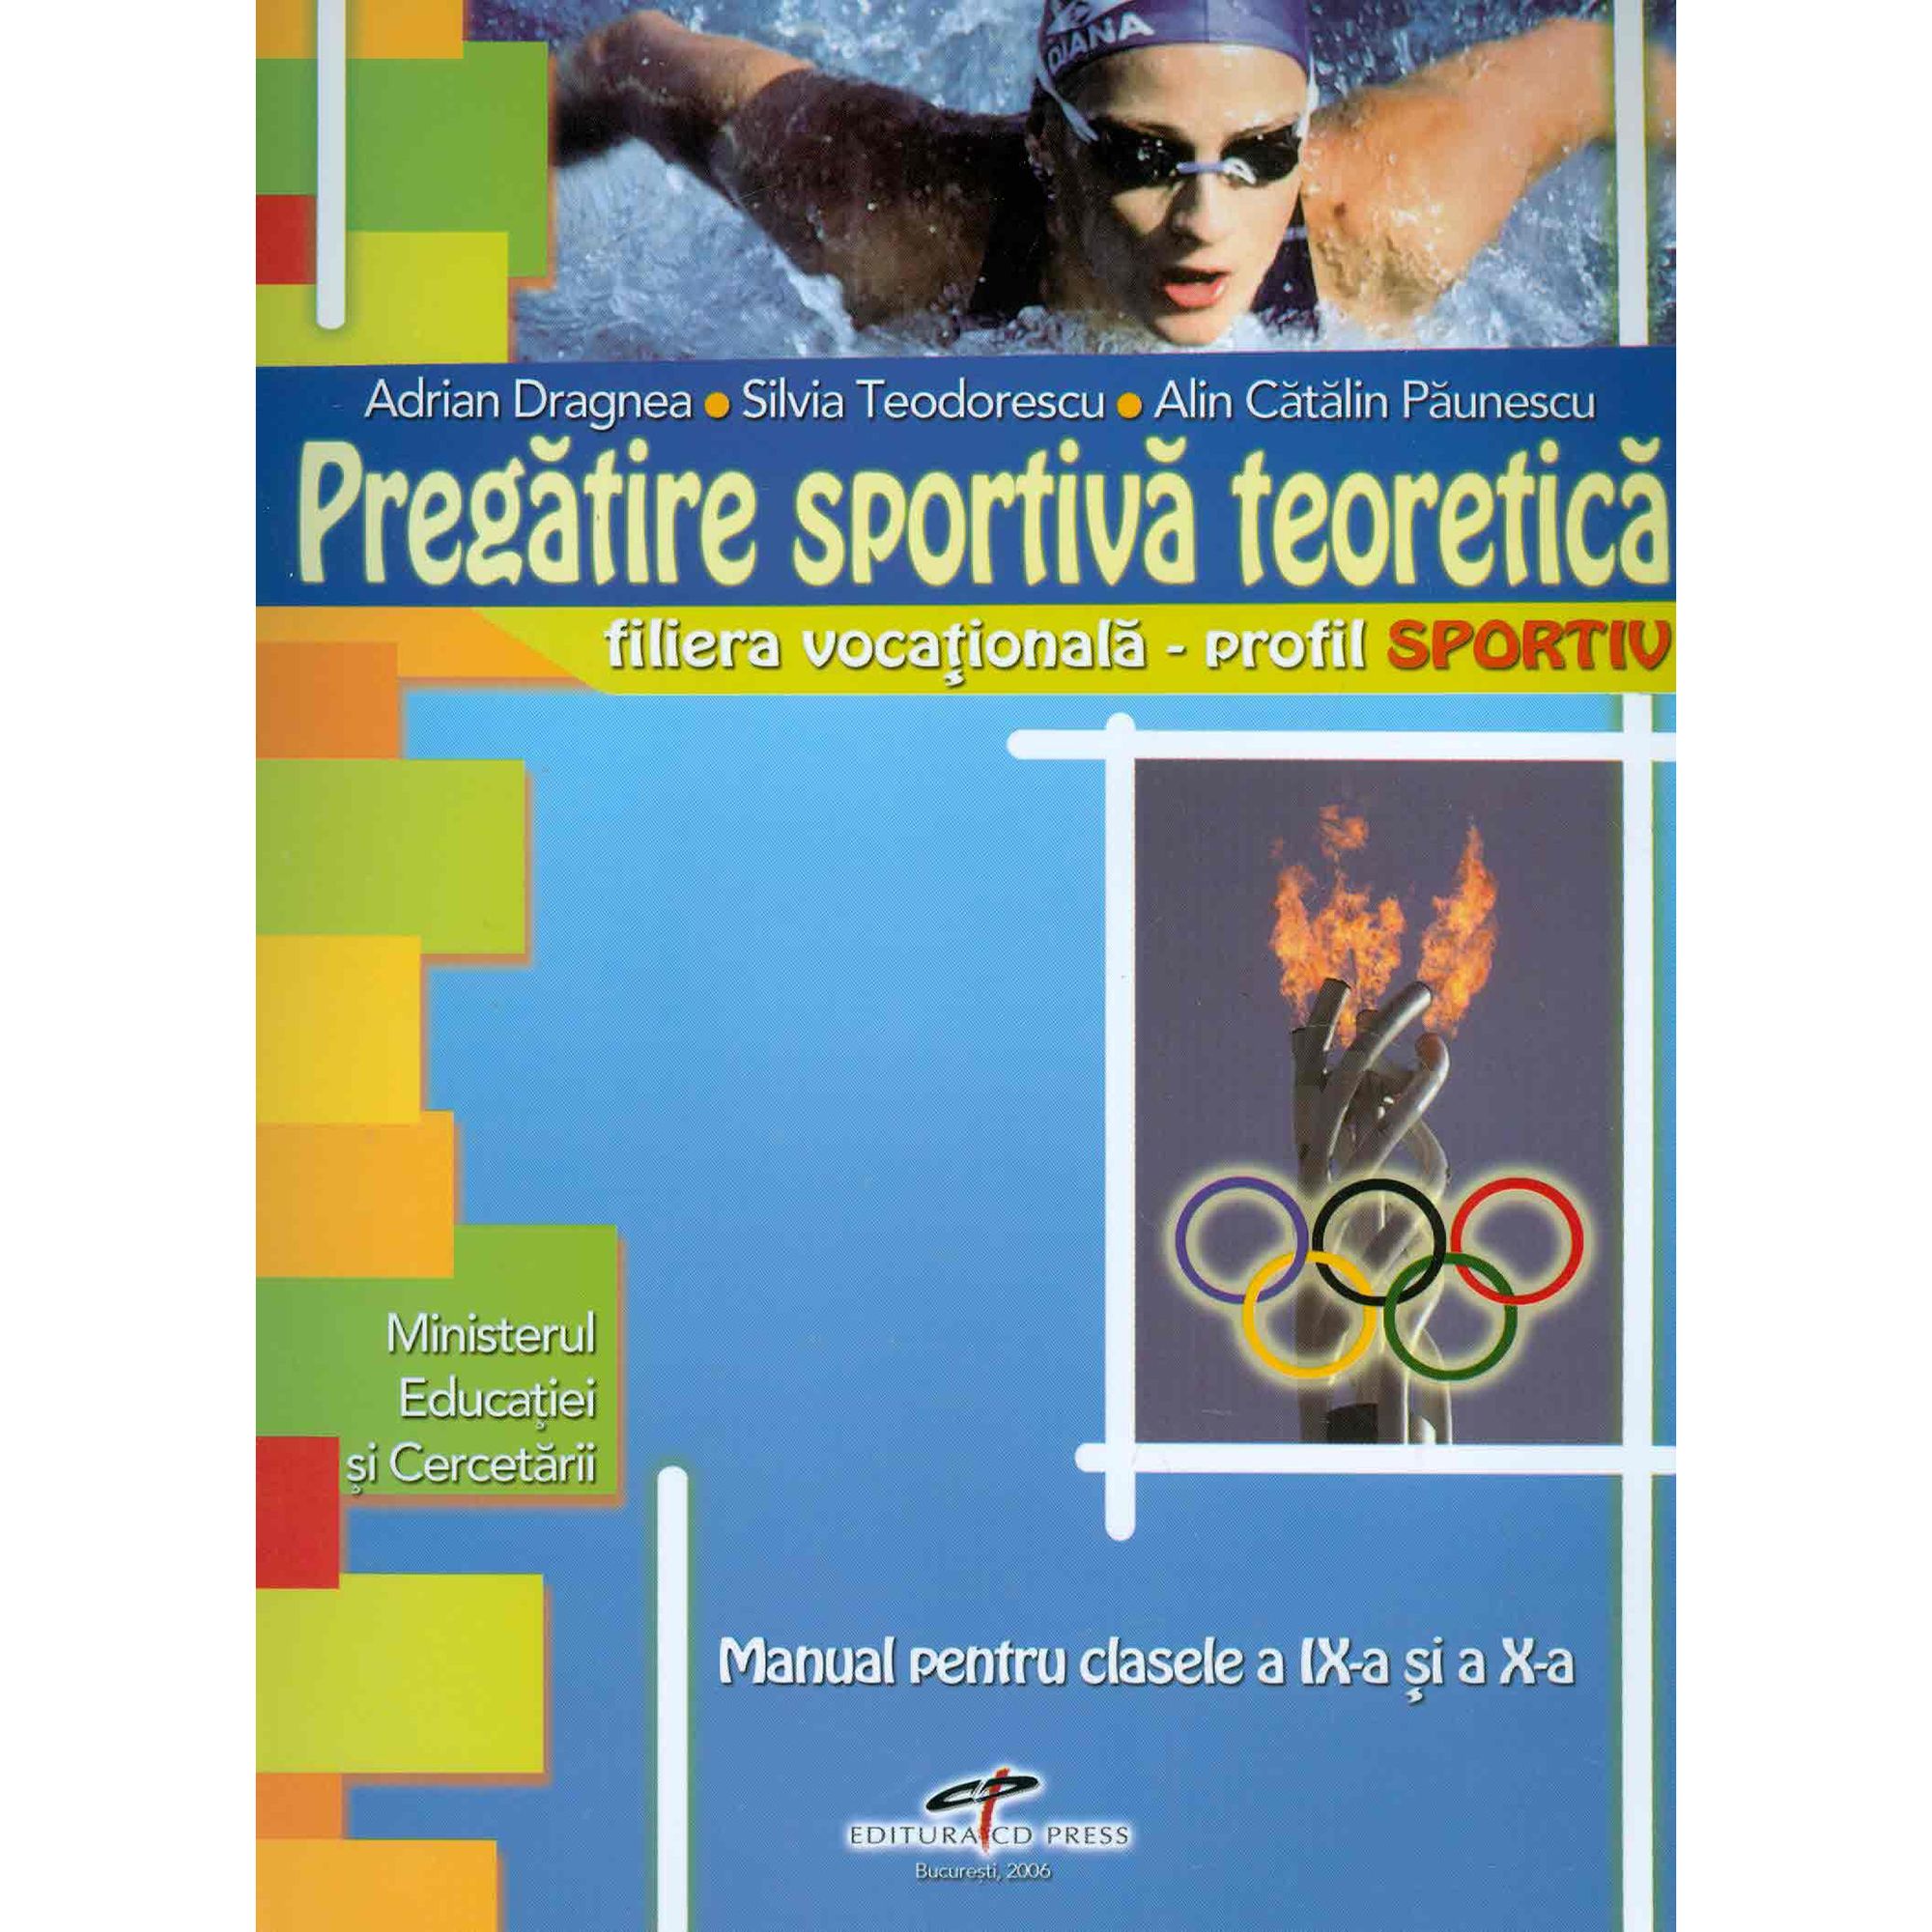 Pregatire sportiva teoretica clasa IX-X-a | Adrian Dragnea, Silvia Teodorescu, Alin Paunescu